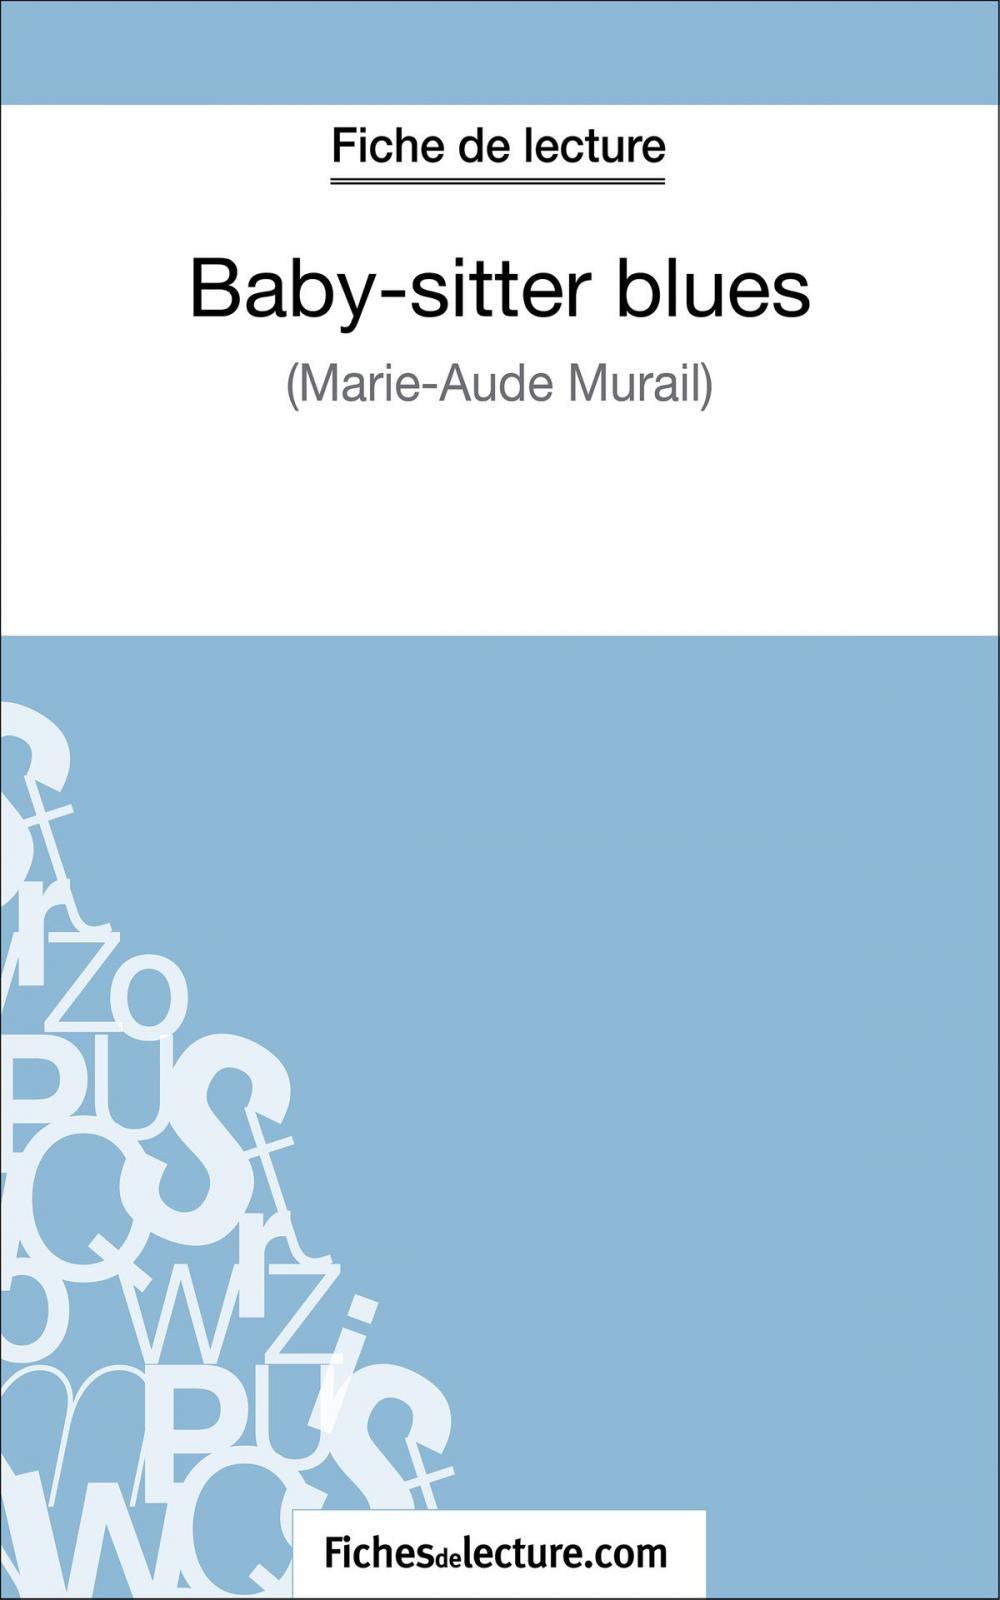 Big bigCover of Baby-sitter blues de Marie-Aude Murail (Fiche de lecture)